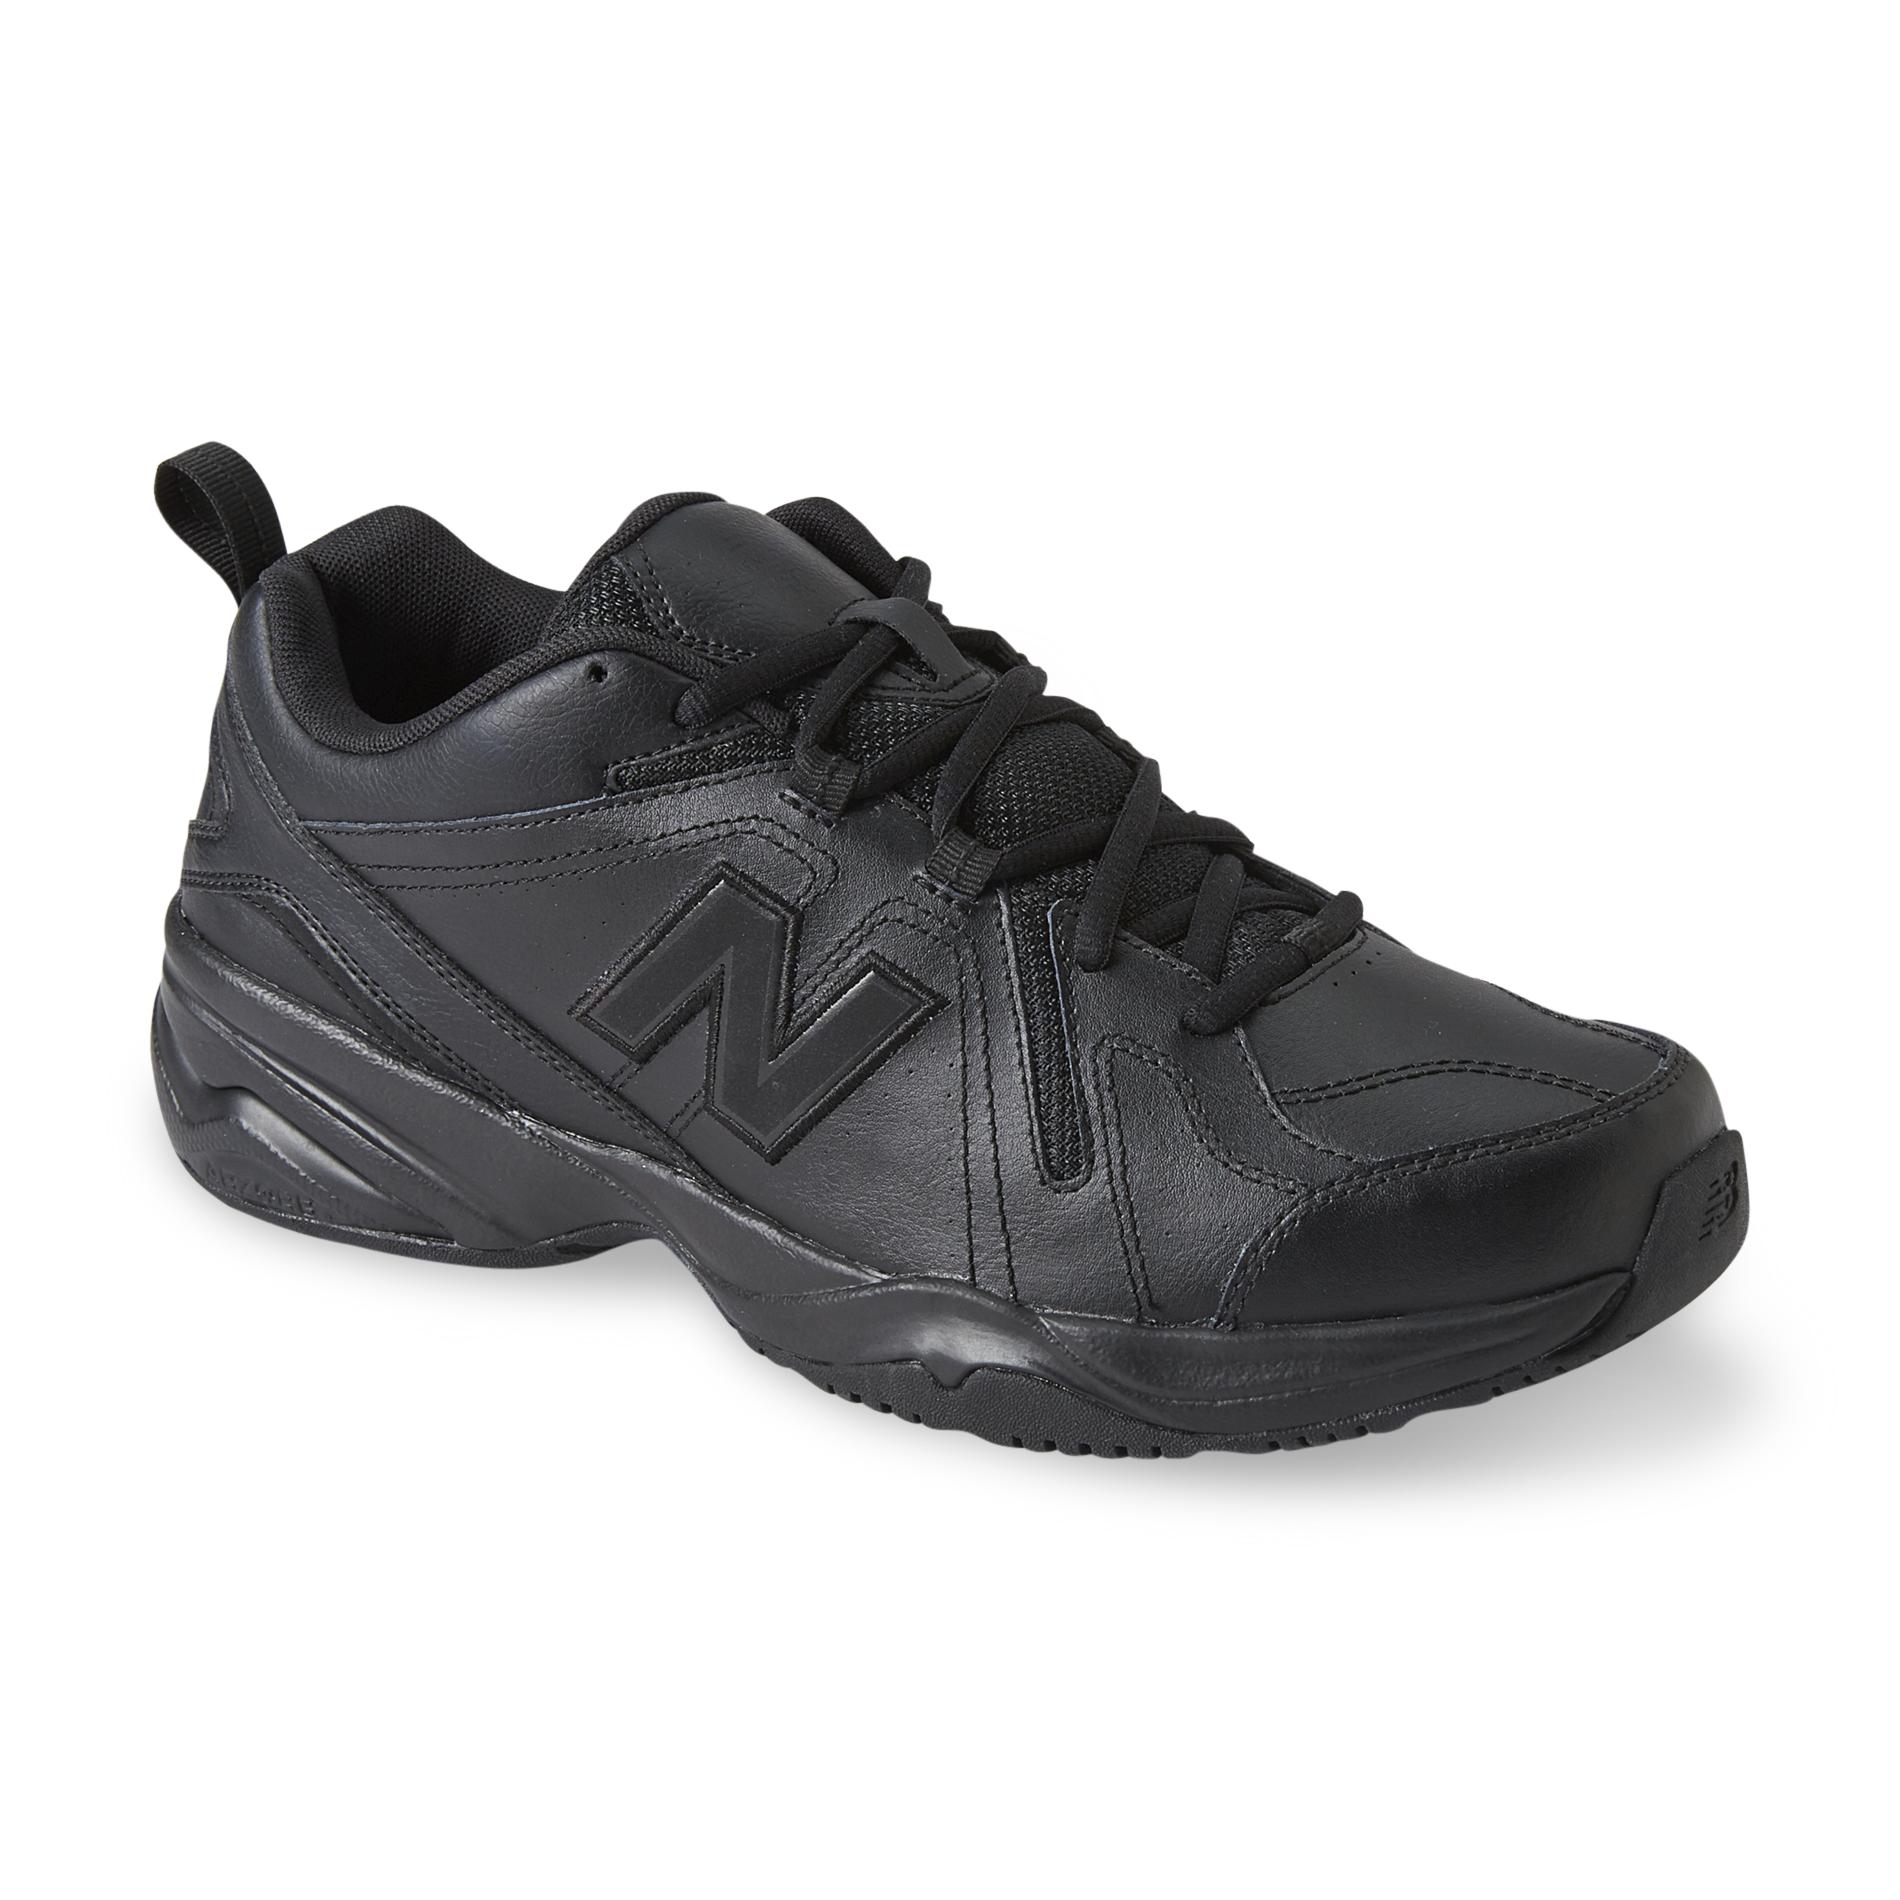 New Balance Men's 608v4 Black Wide Athletic Shoe